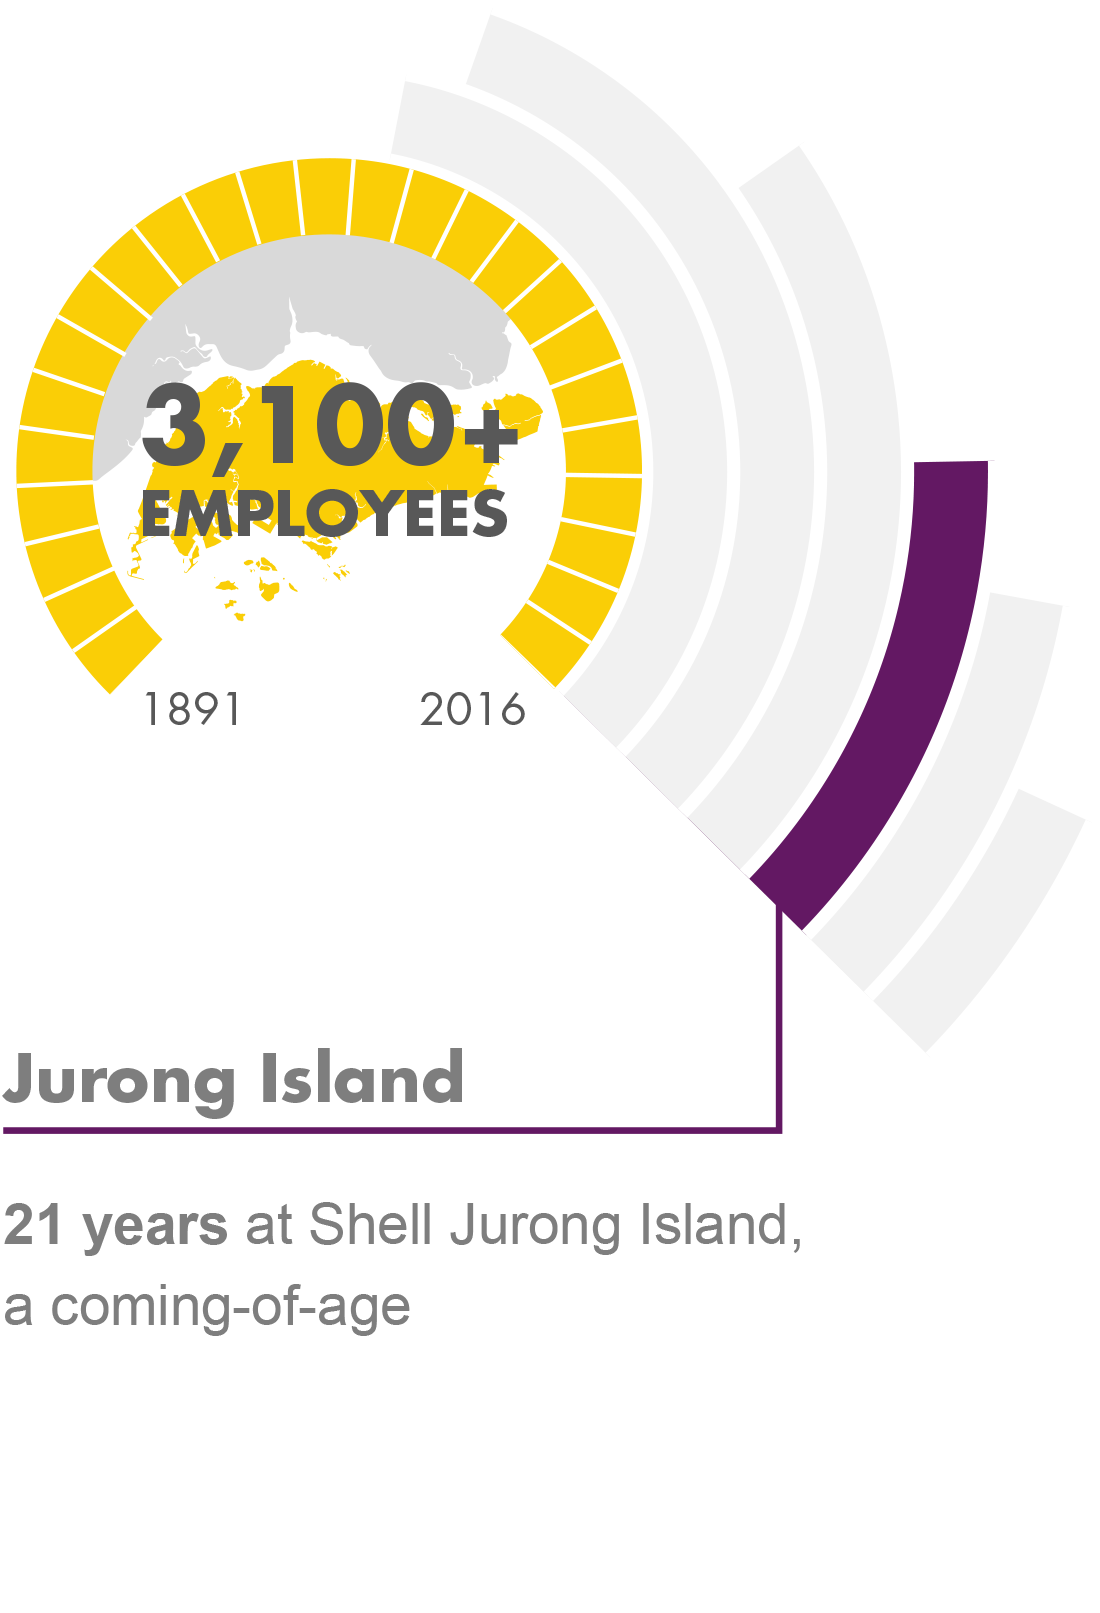 Jurong Island - 21 years at Shell Jurong Island, a coming of age